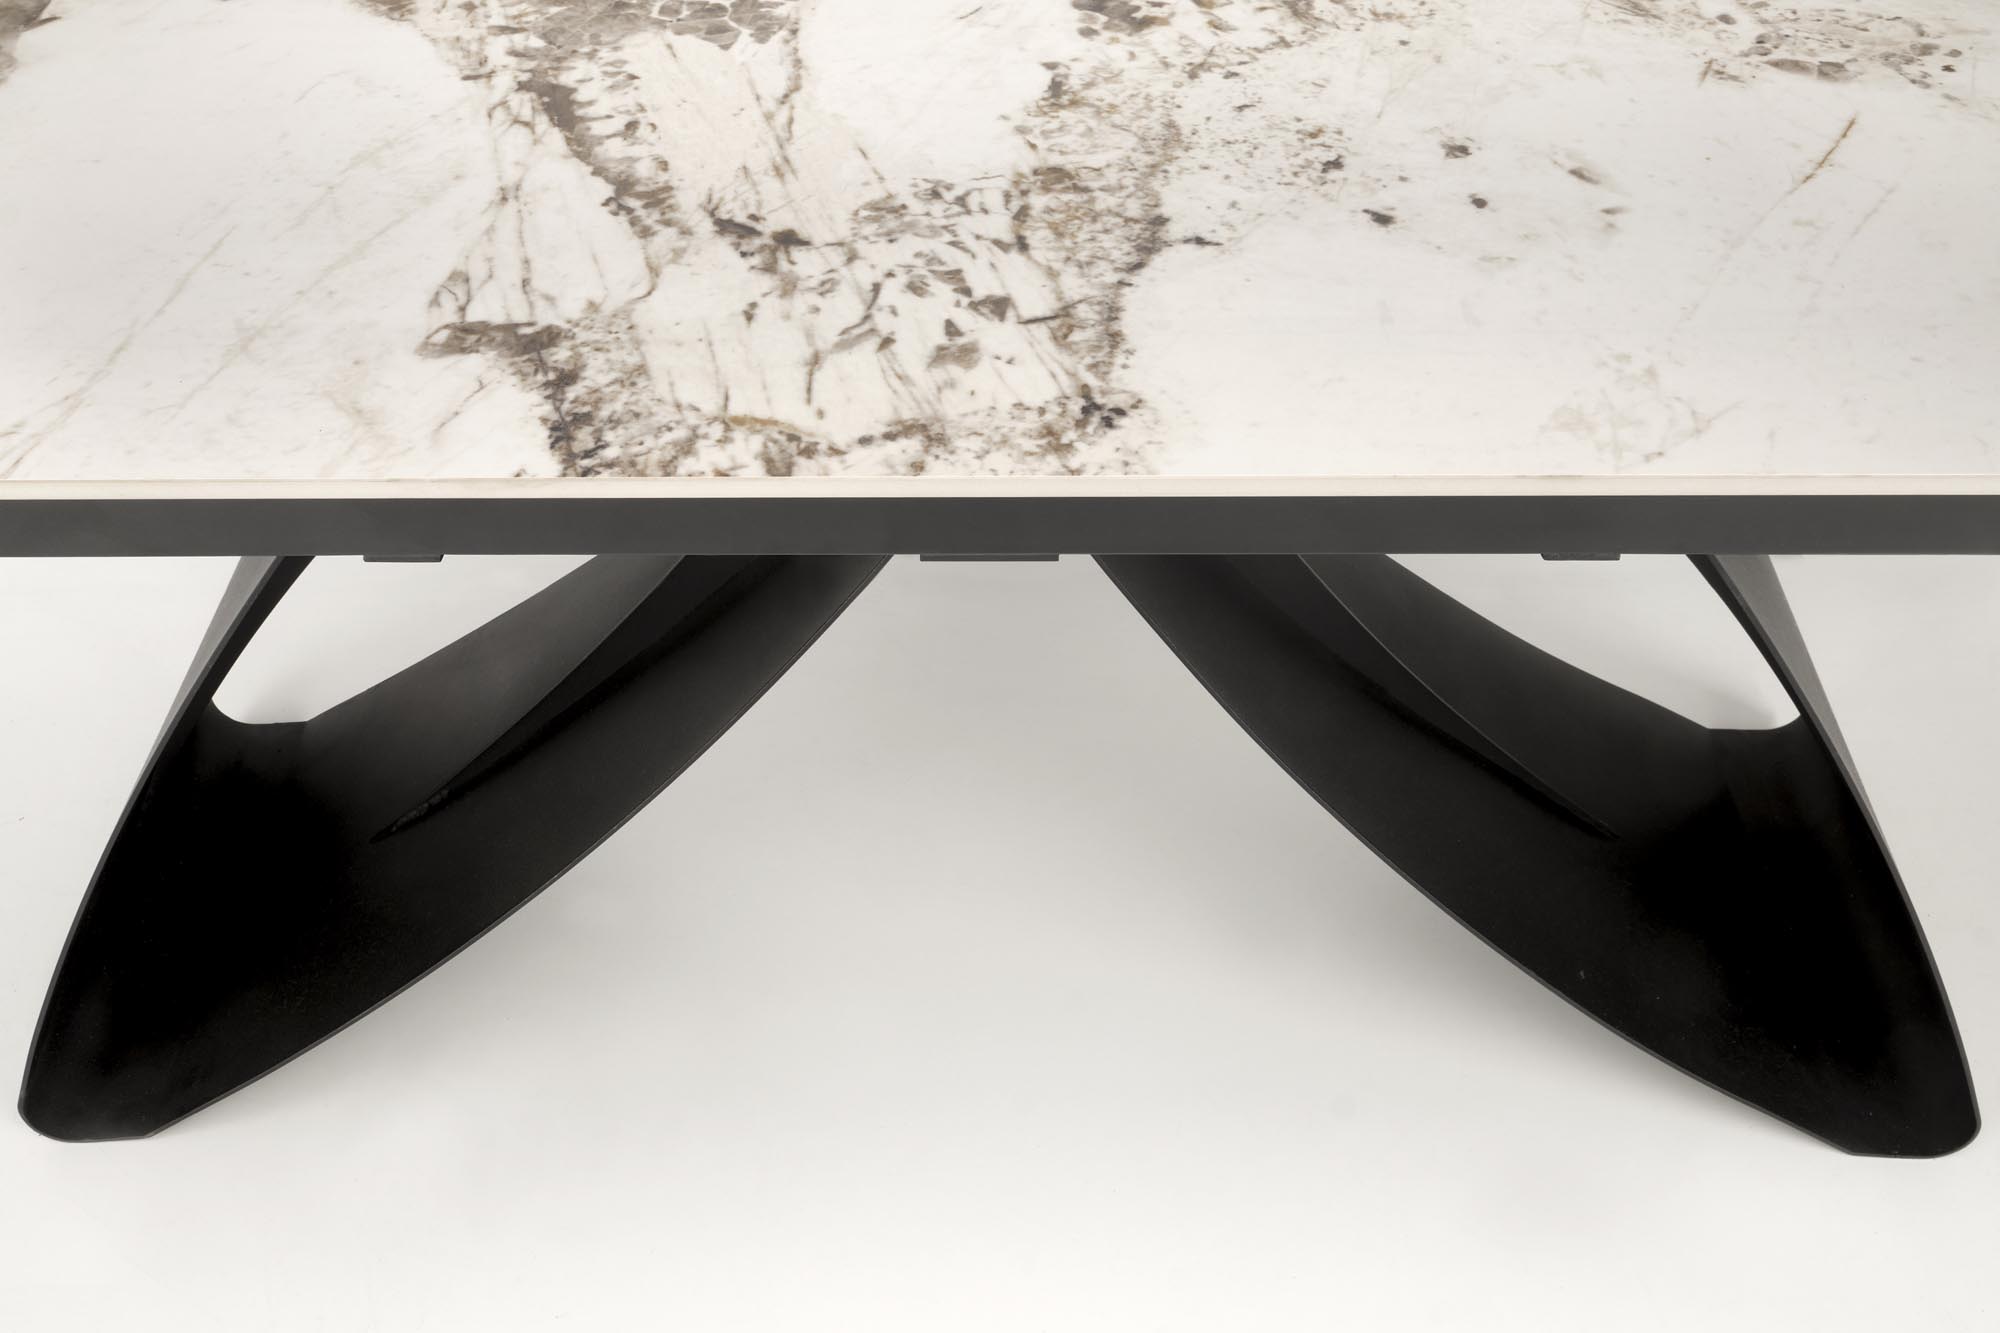 Stół rozkładany Hilario 180-260x90 cm - biały marmur / czarne nogi Stół rozkładany Hilario 180-260x90 cm - biały marmur / czarne nogi